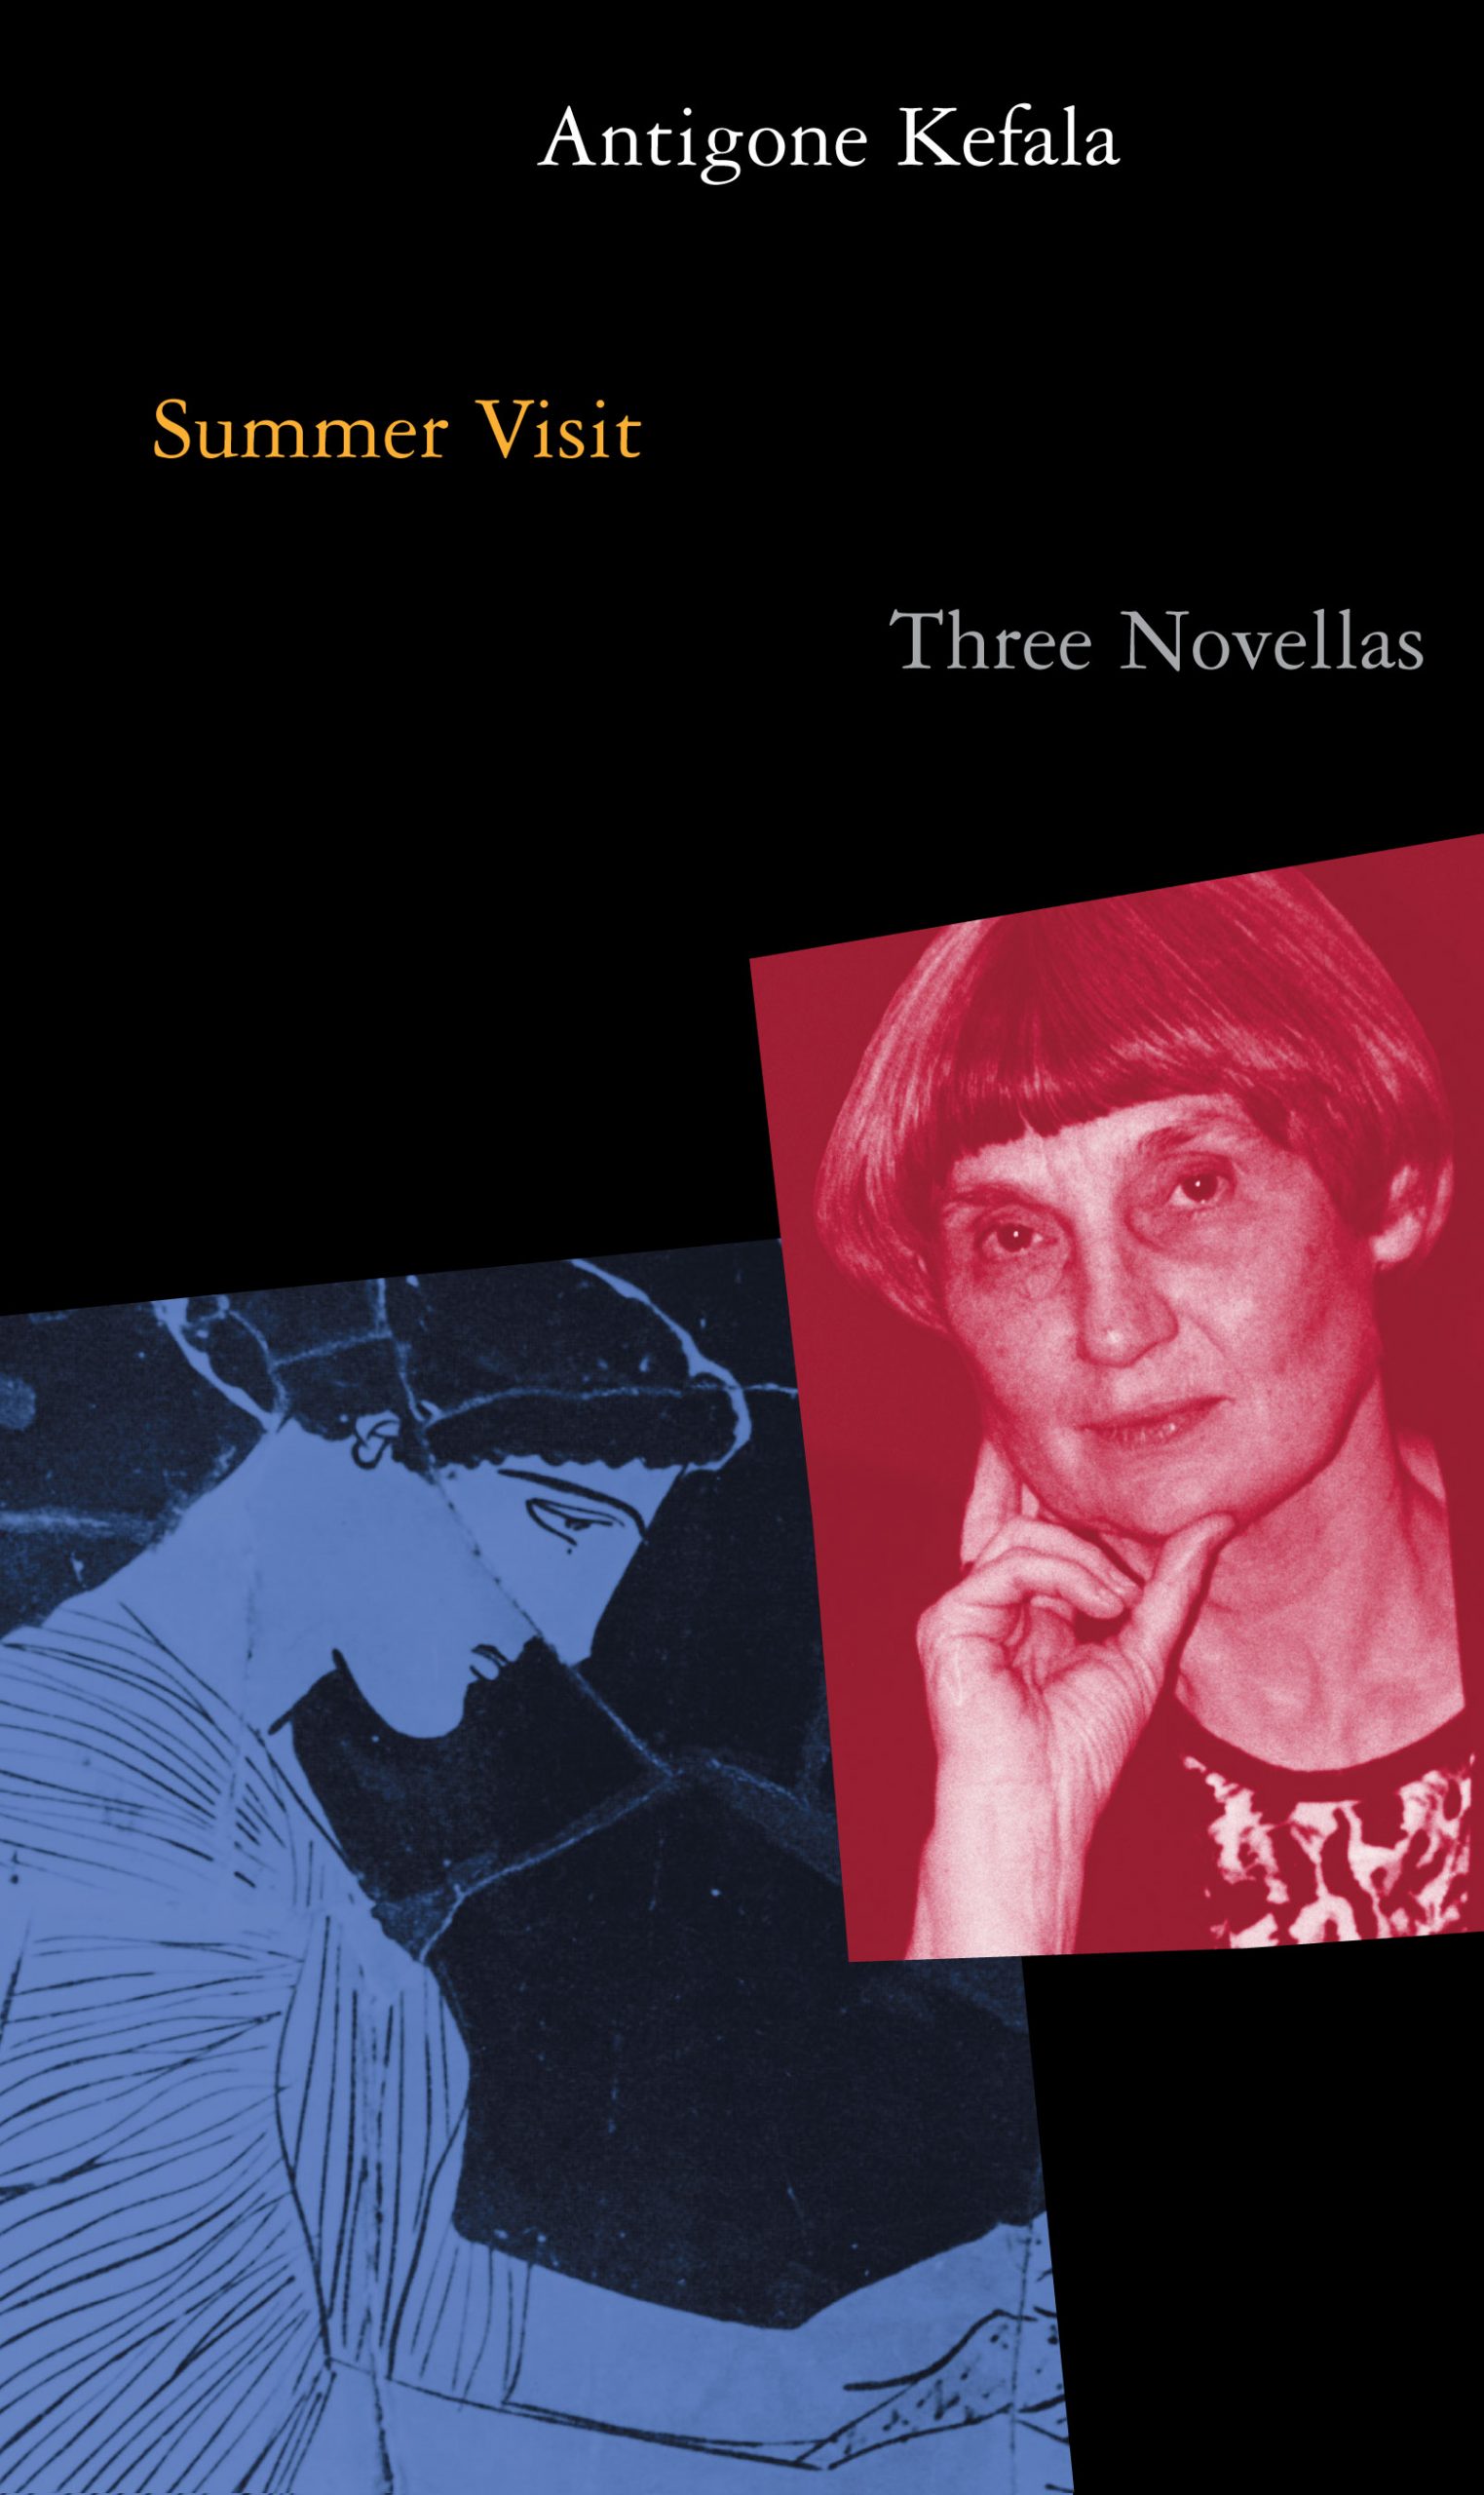 Summer Visit: Three novellas